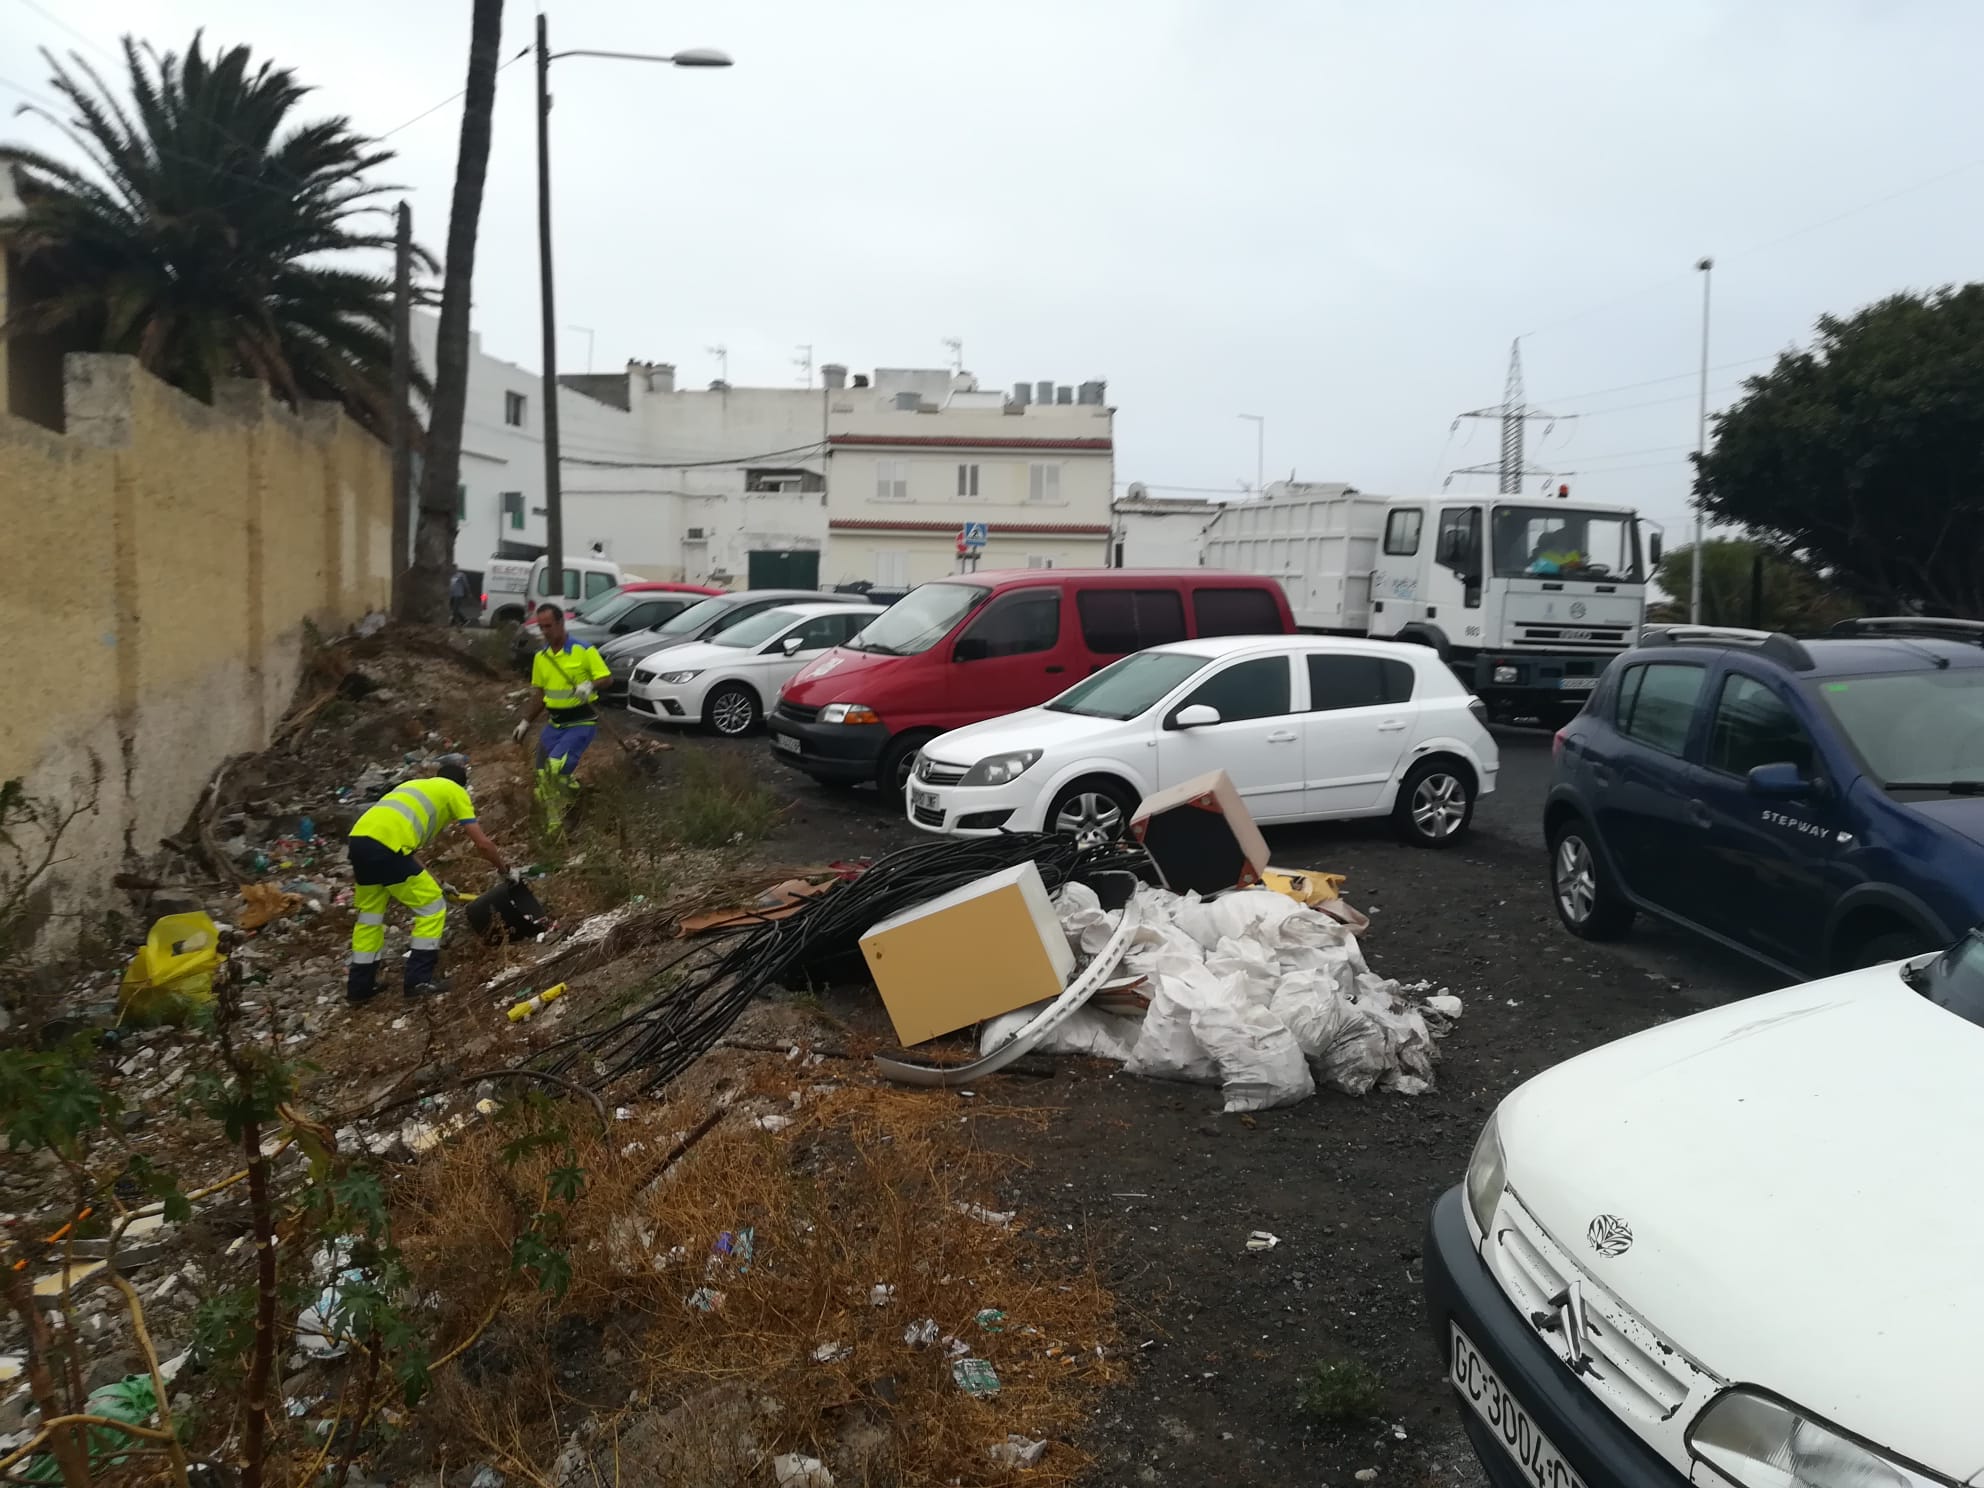 Servicio de Limpieza. Las Palmas de Gran Canaria